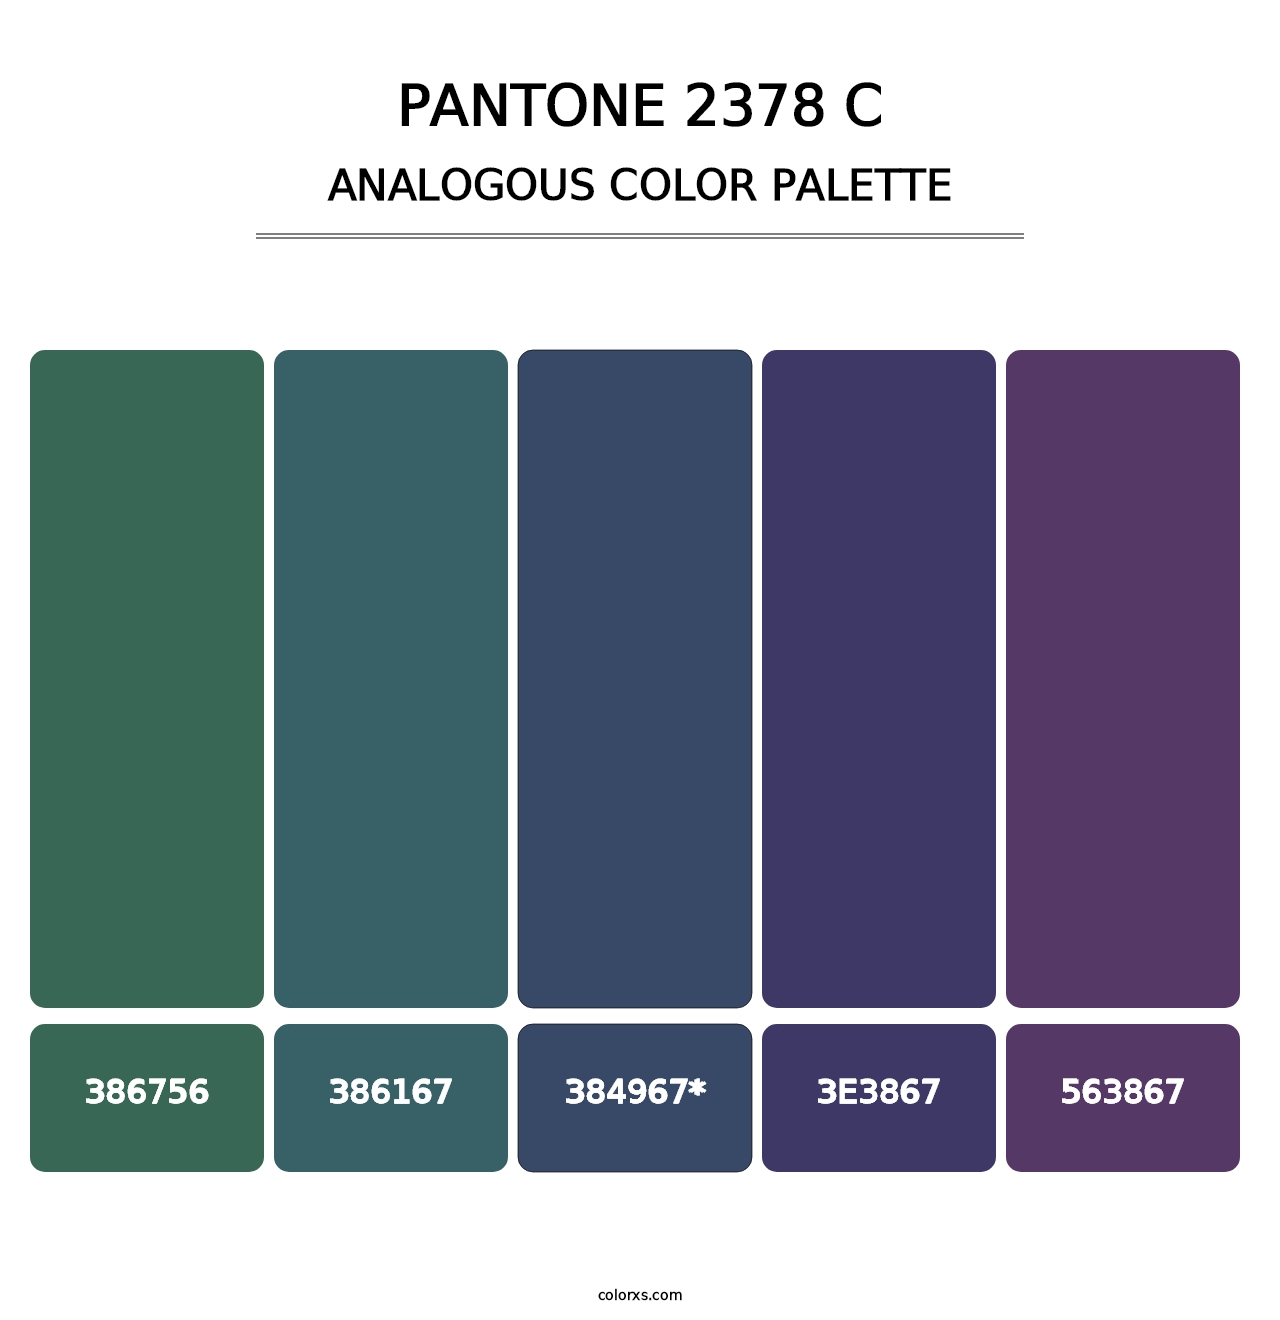 PANTONE 2378 C - Analogous Color Palette